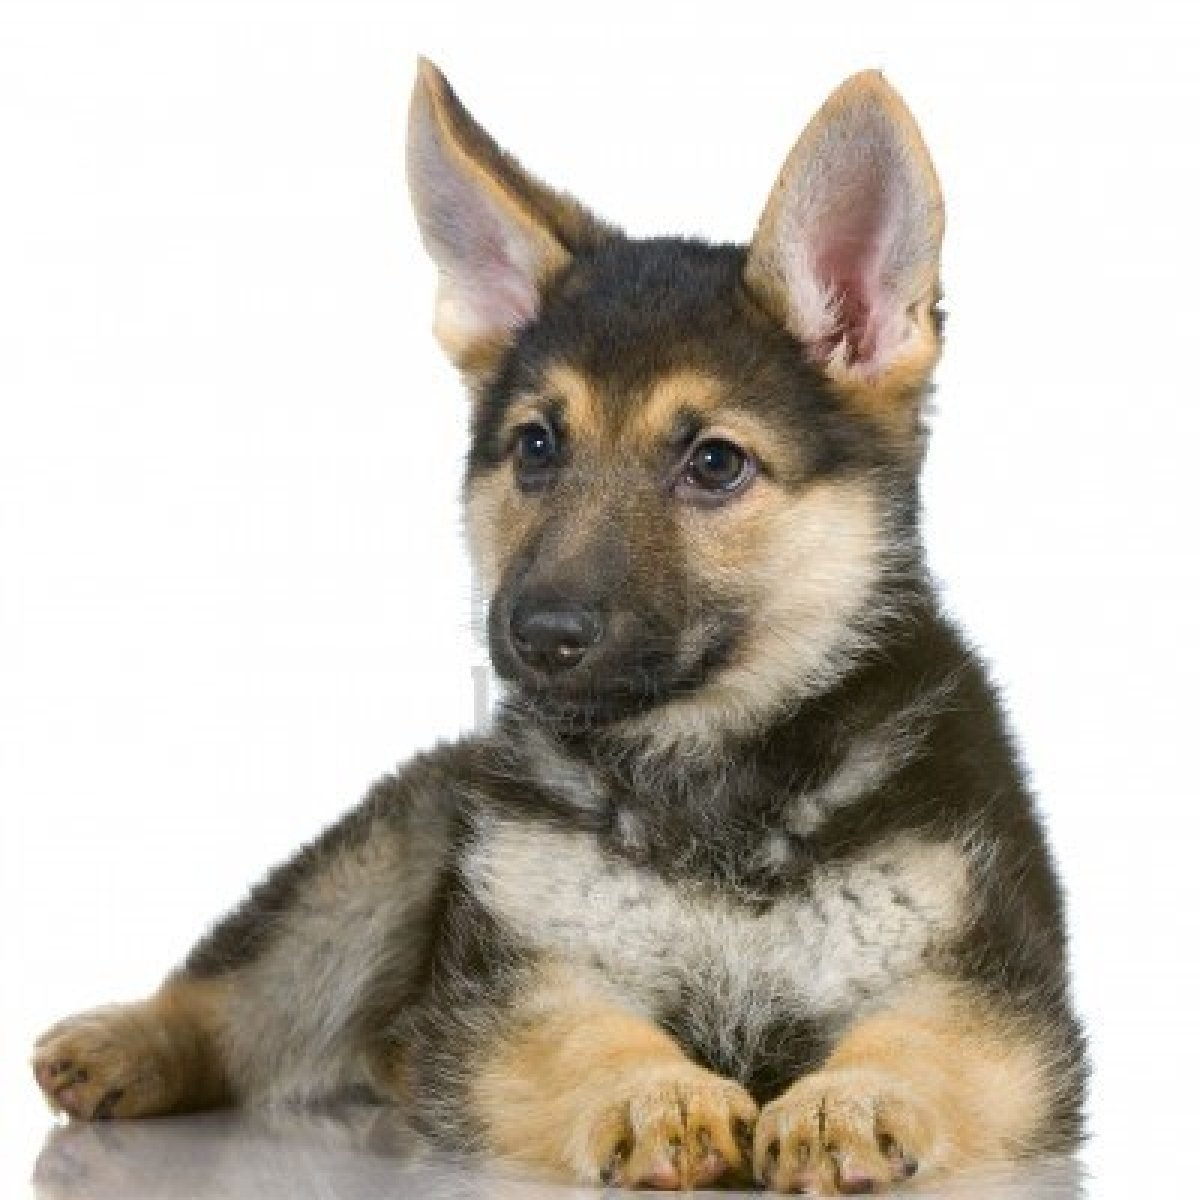 Marty Fielding snor Verplaatsing Wel of niet een hondje kopen? | Nieuws | Honden & Hondenrassen